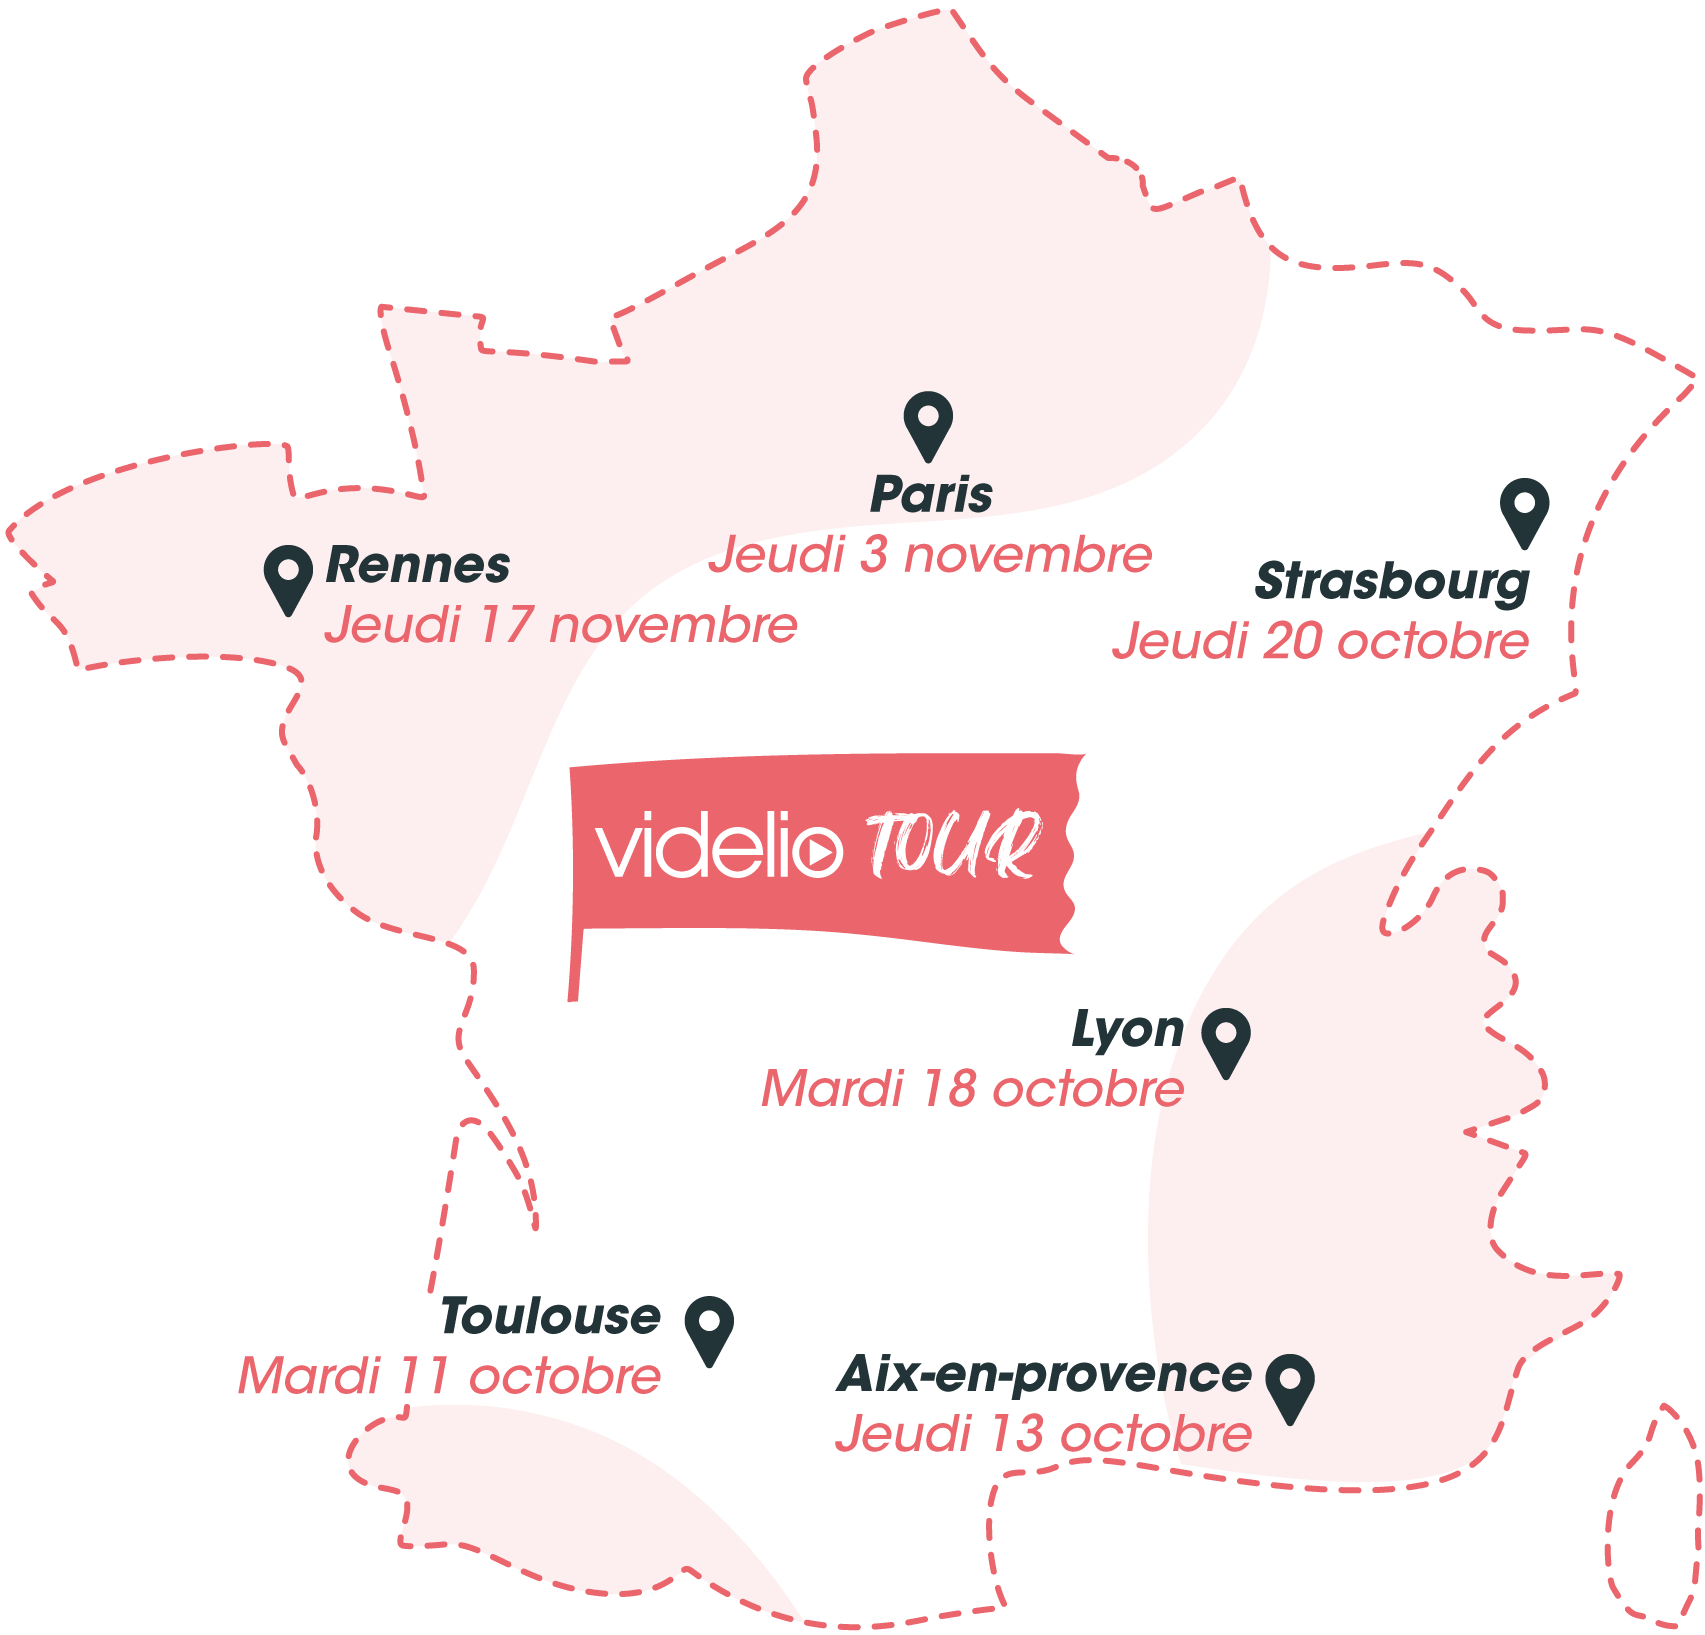 Videlio_tour_carte-france-Collabpacks